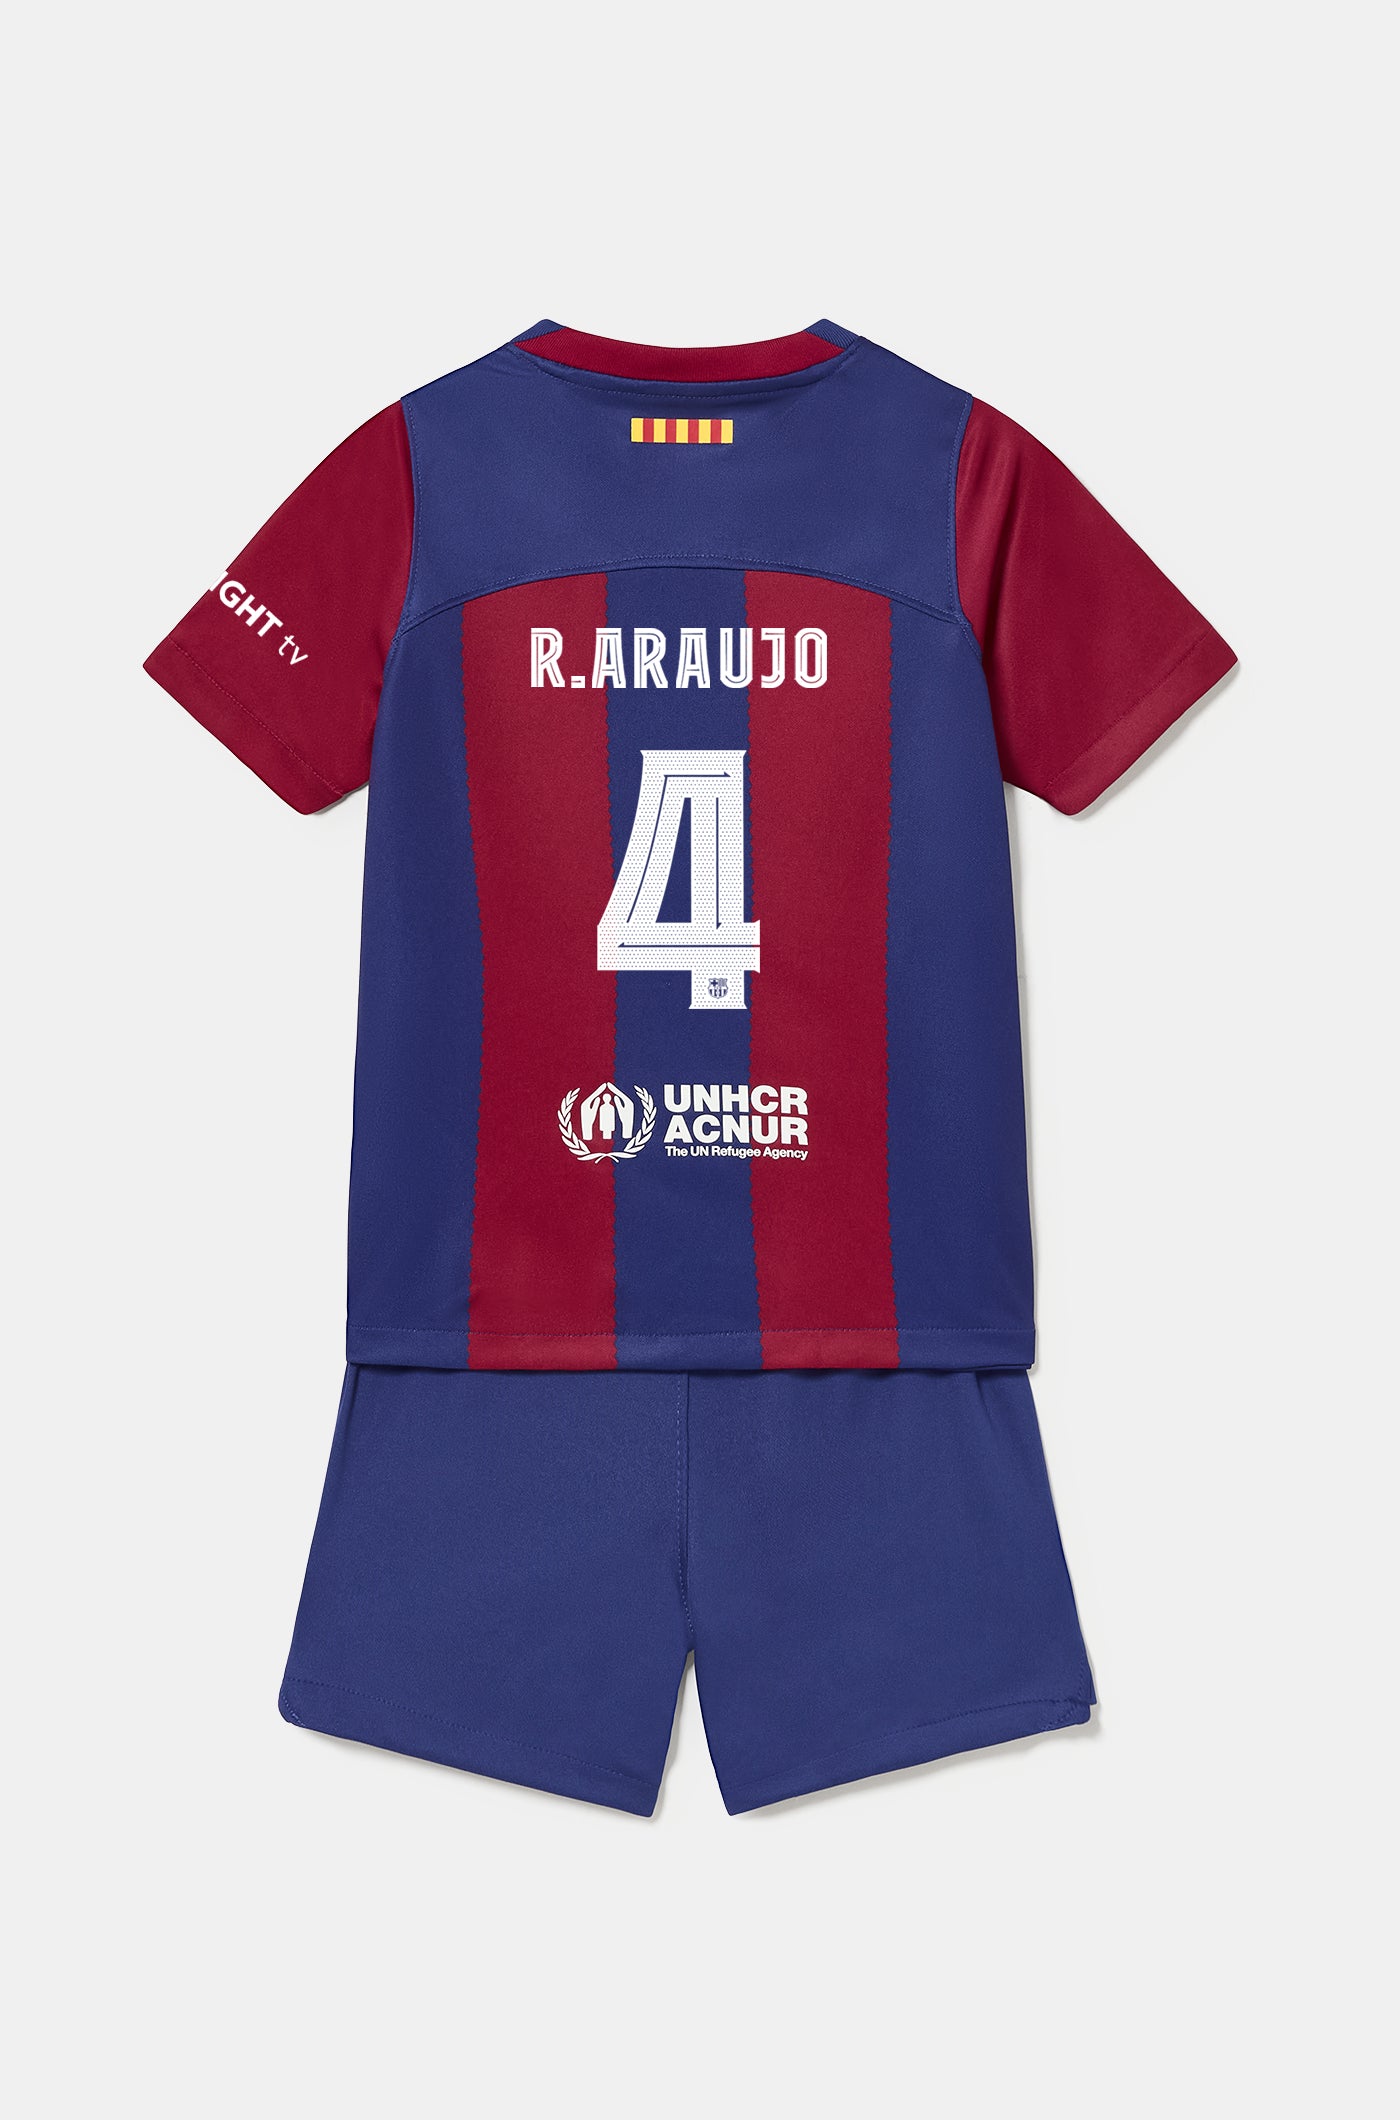 Conjunt primer equipament FC Barcelona 23/24 - Nen/a petit/a - R. ARAUJO